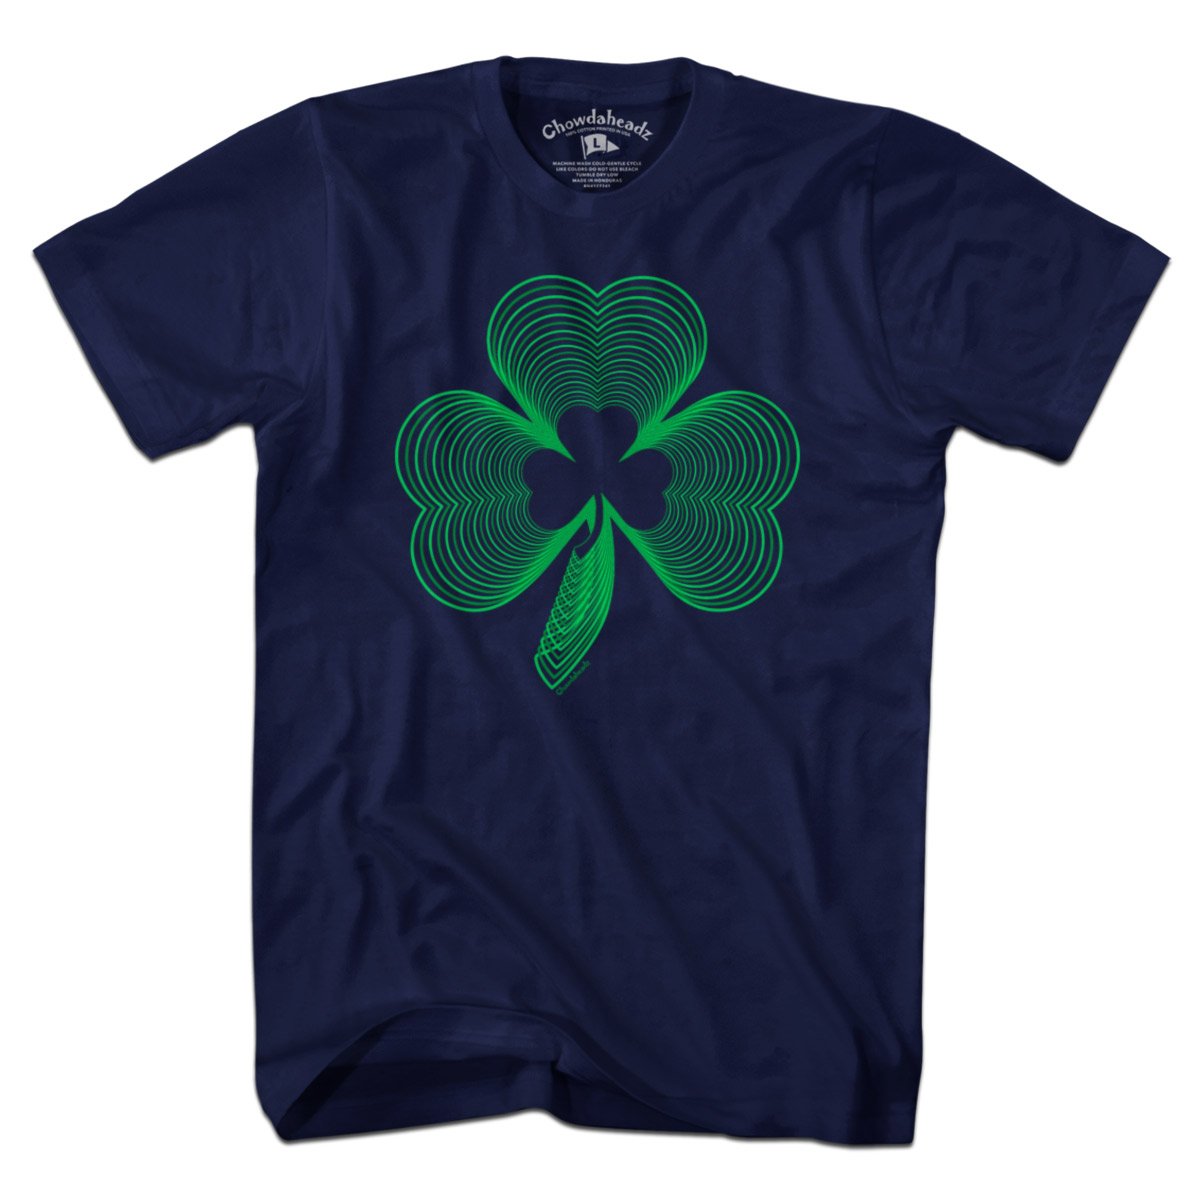 Neon Irish Shamrock T-Shirt - Chowdaheadz